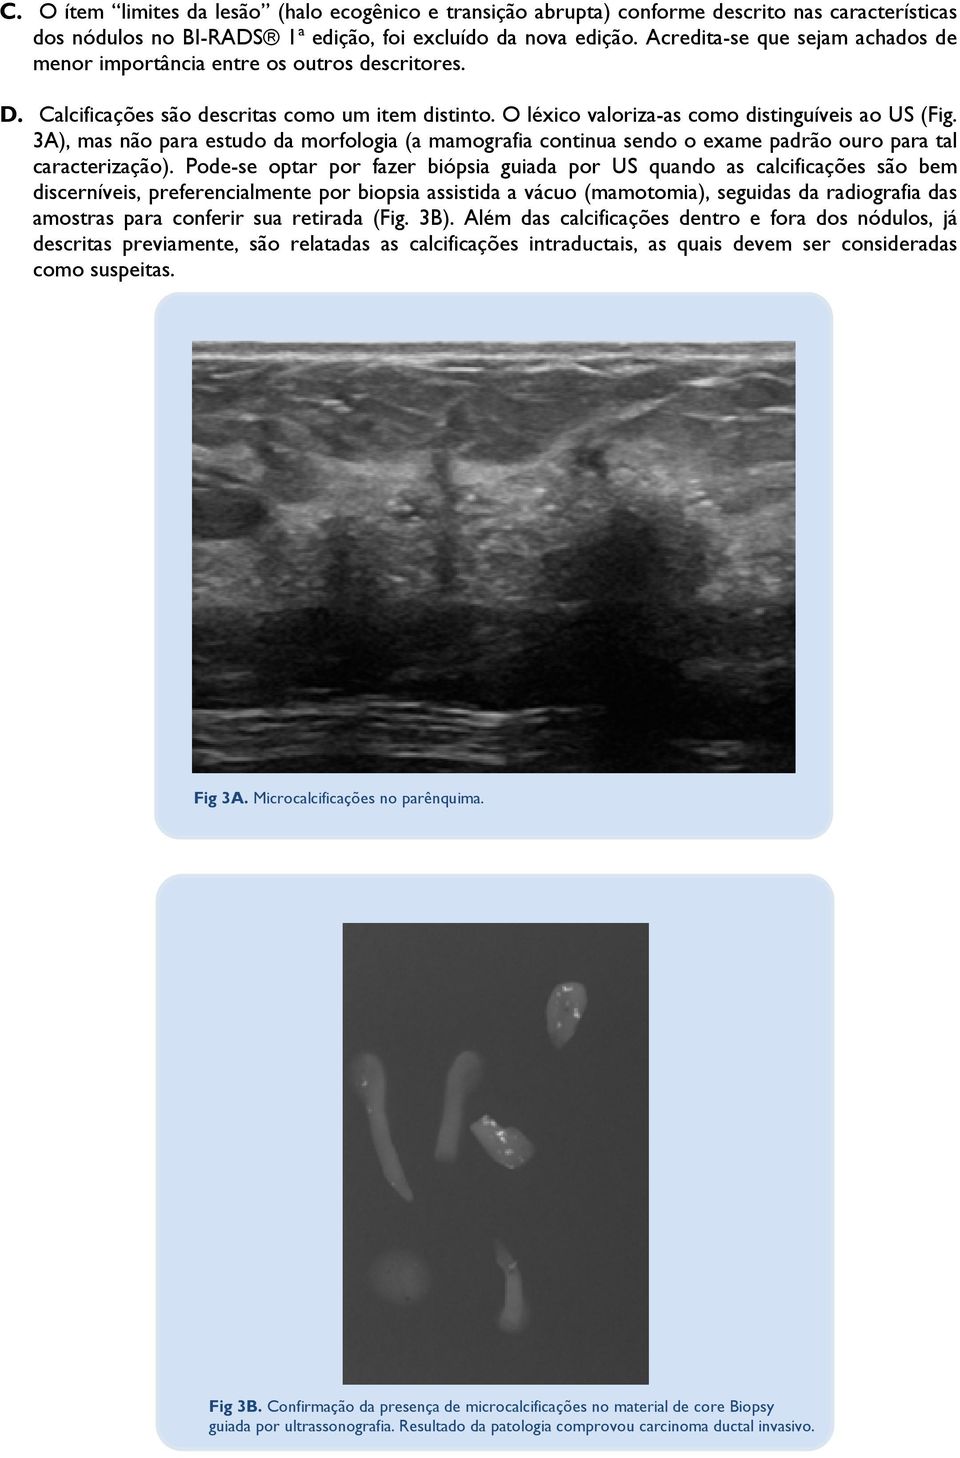 3A), mas não para estudo da morfologia (a mamografia continua sendo o exame padrão ouro para tal caracterização).